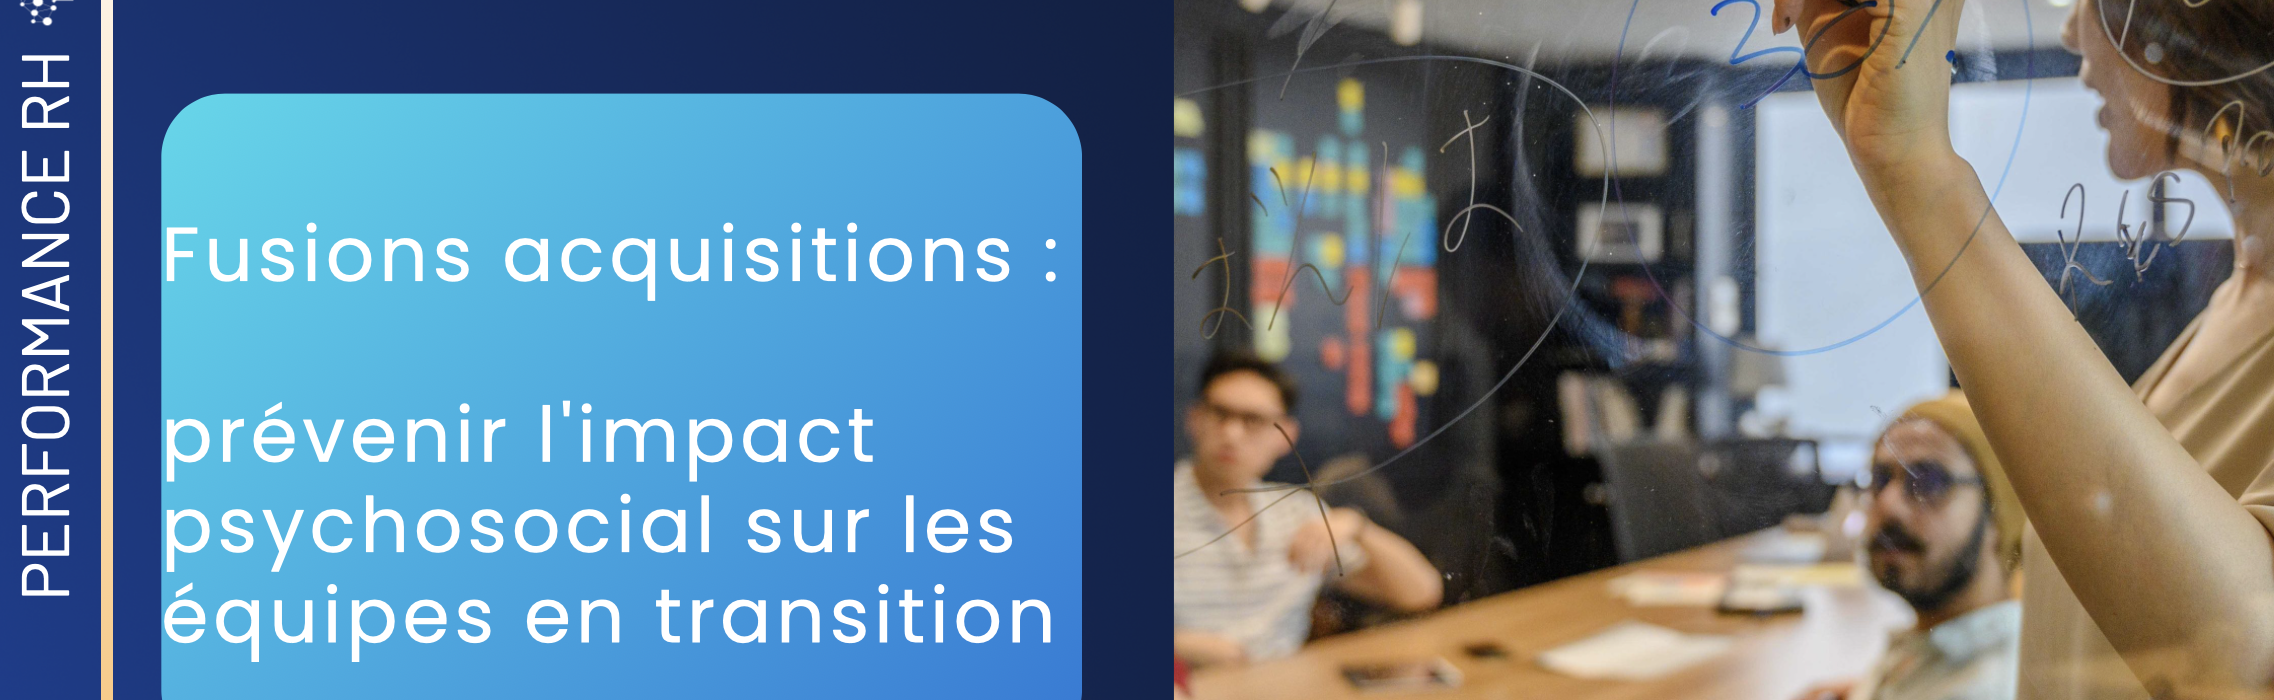 Fusions_acquisitions_prévenir_l_impact_psychosocial_sur_les_équipes_en_transition